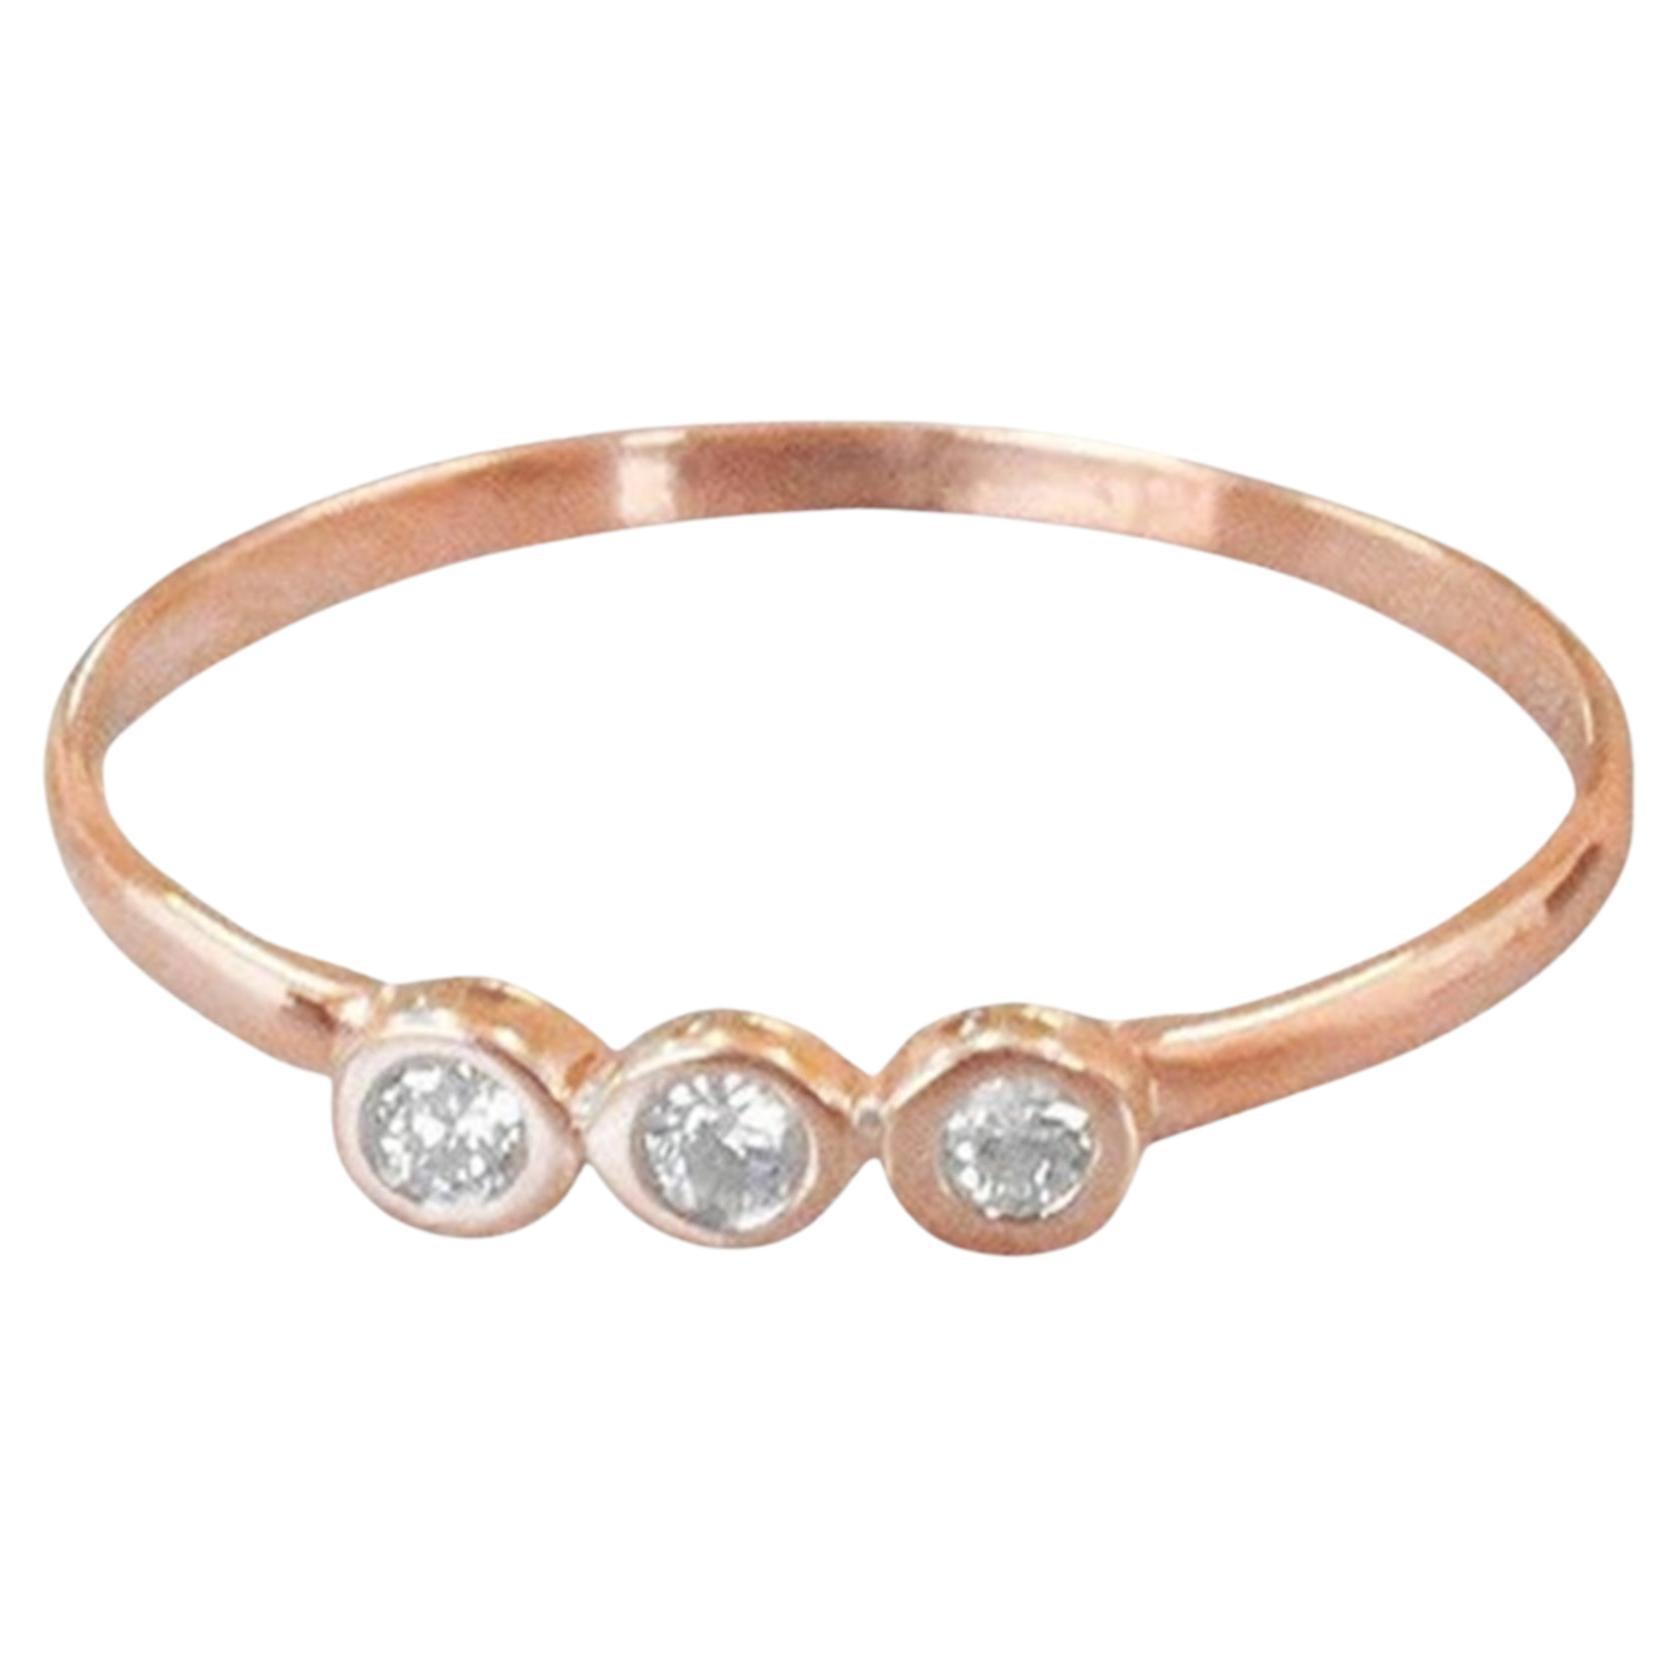 For Sale:  14k Gold Diamond 1.9 mm Ring Bezel Setting Three Diamond Ring Trio Diamond Ring